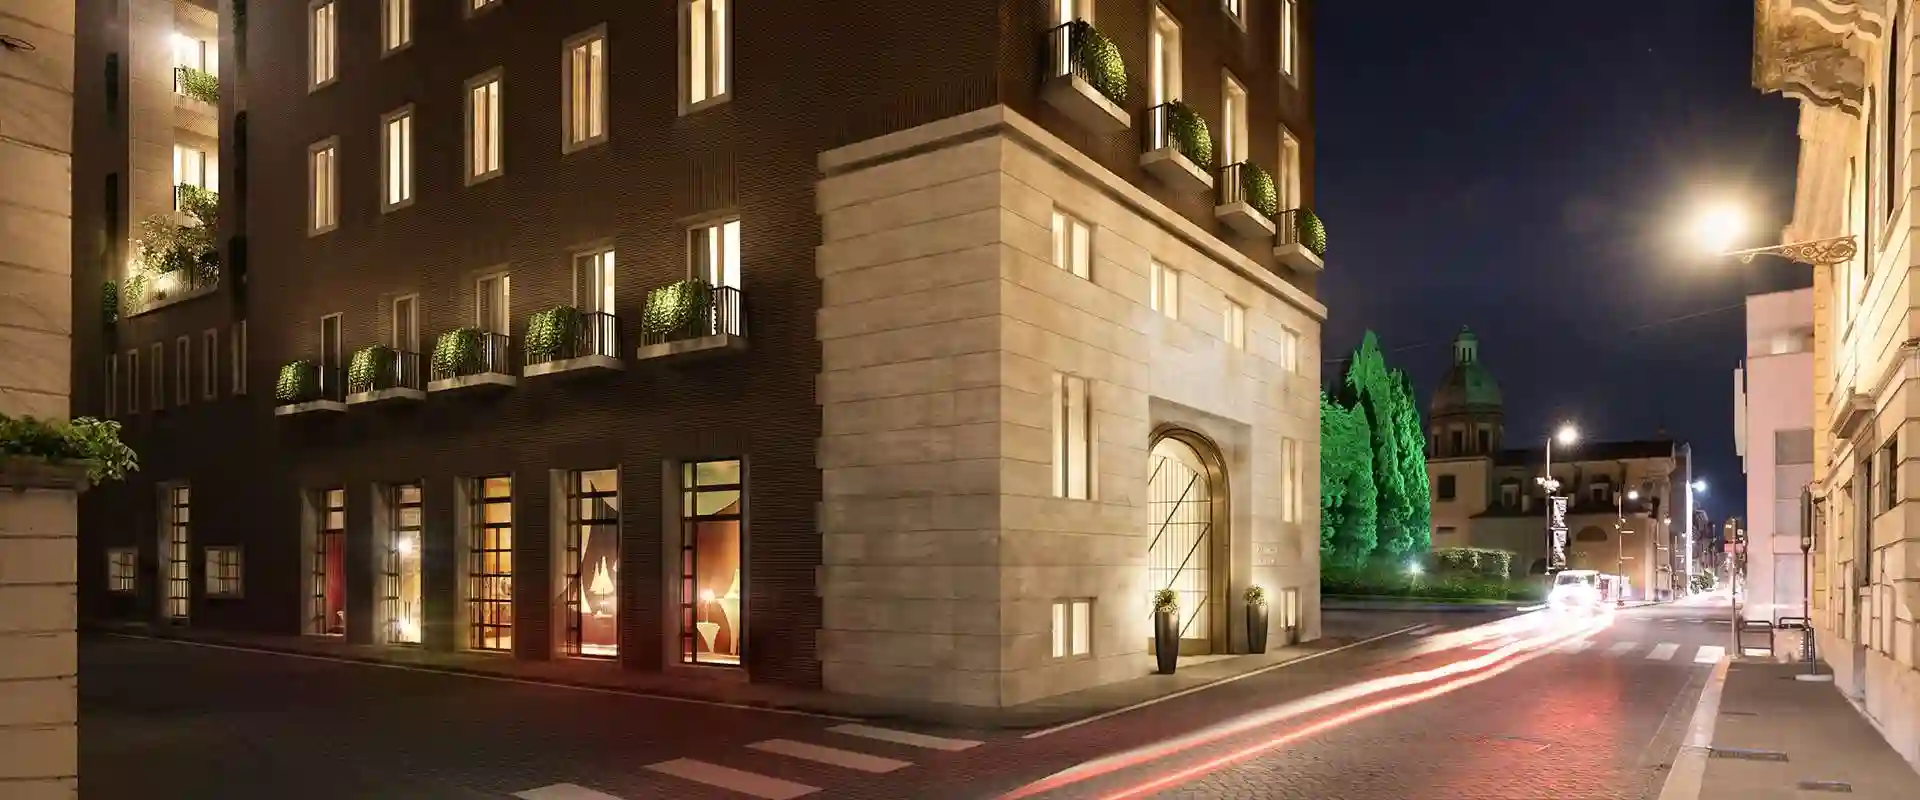 Bvlgari Hotel Roma llegará con una nueva experiencia de lujo en Italia